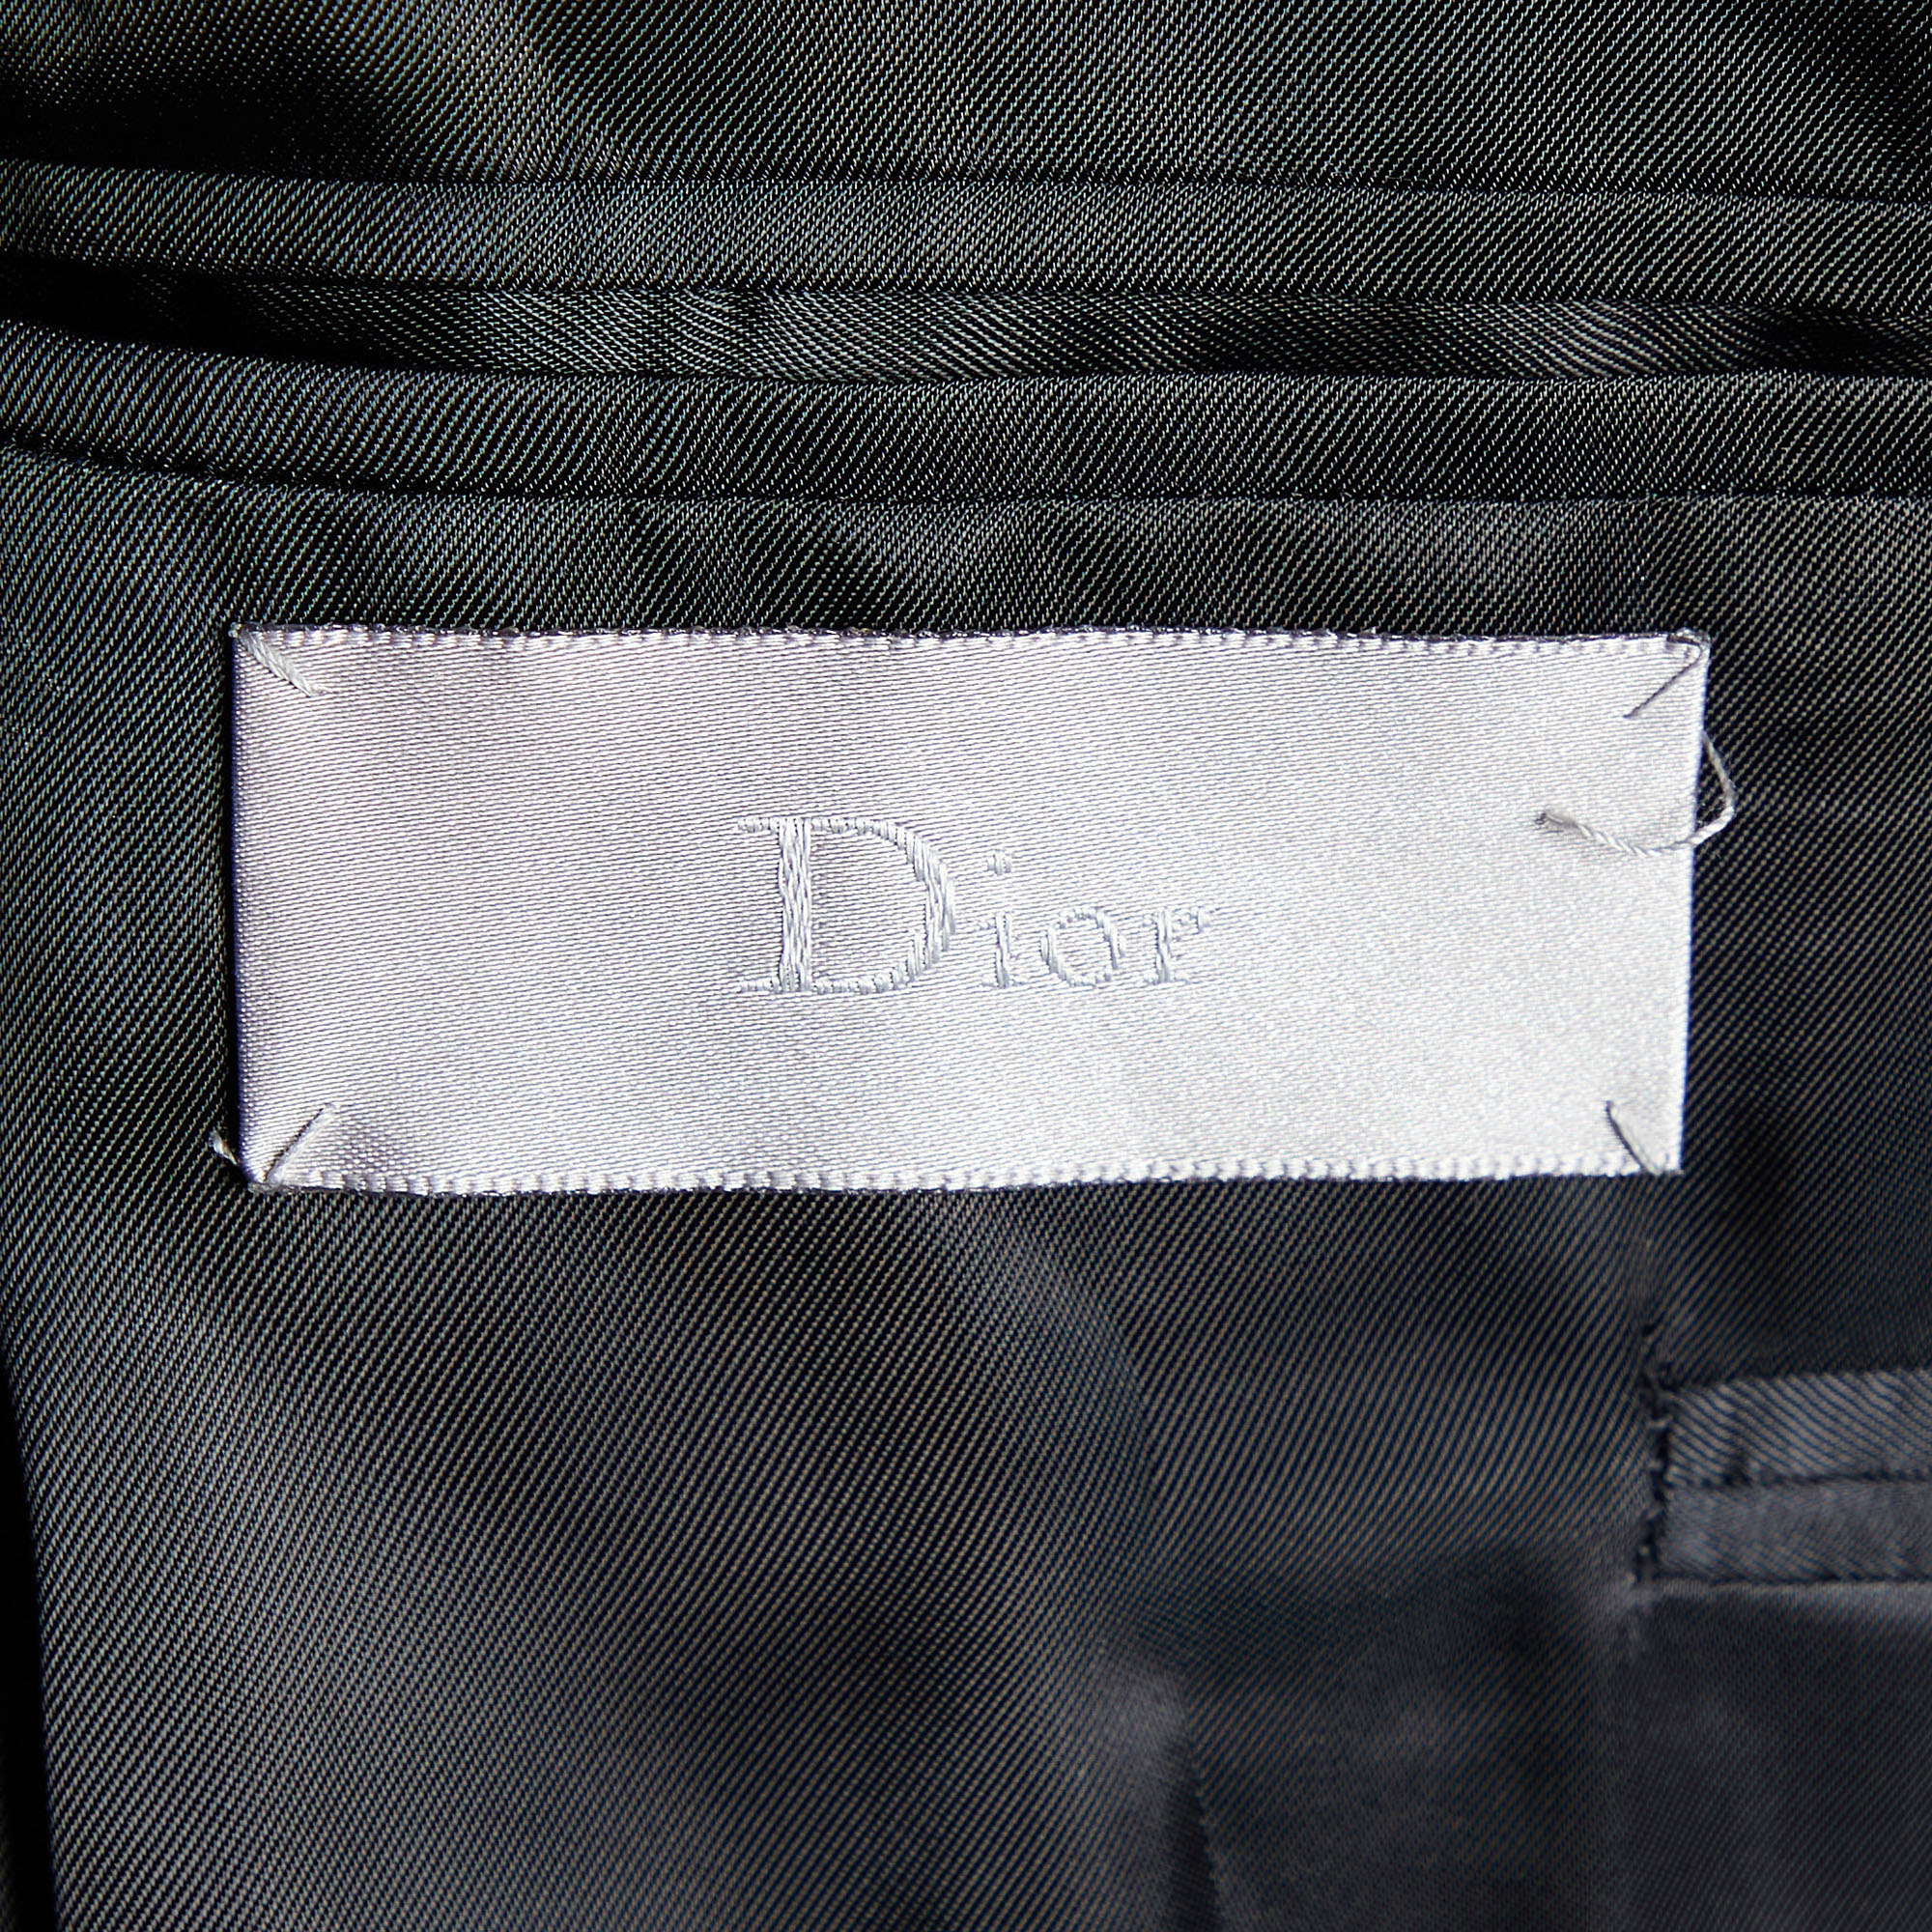 Dior Homme Black Wool Button Front Blazer M